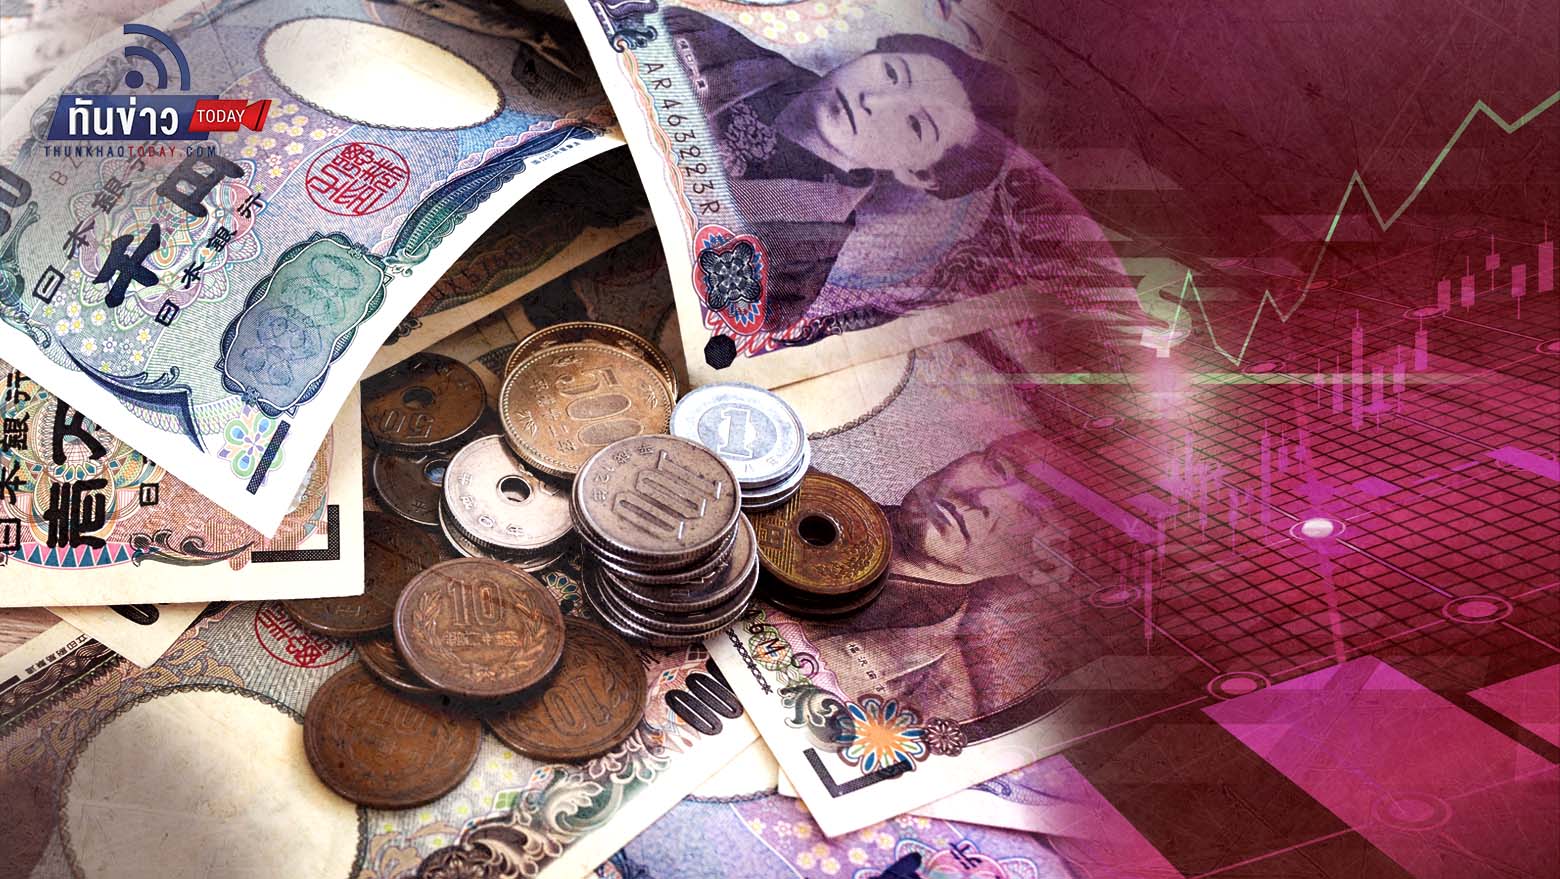 เงินเยนอ่อนค่าในรอบ 32 ปี ใกล้ 150 เมื่อเทียบดอลลาร์  จับตาญี่ปุ่นจะแทรกแซงตลาด FX หรือไม่